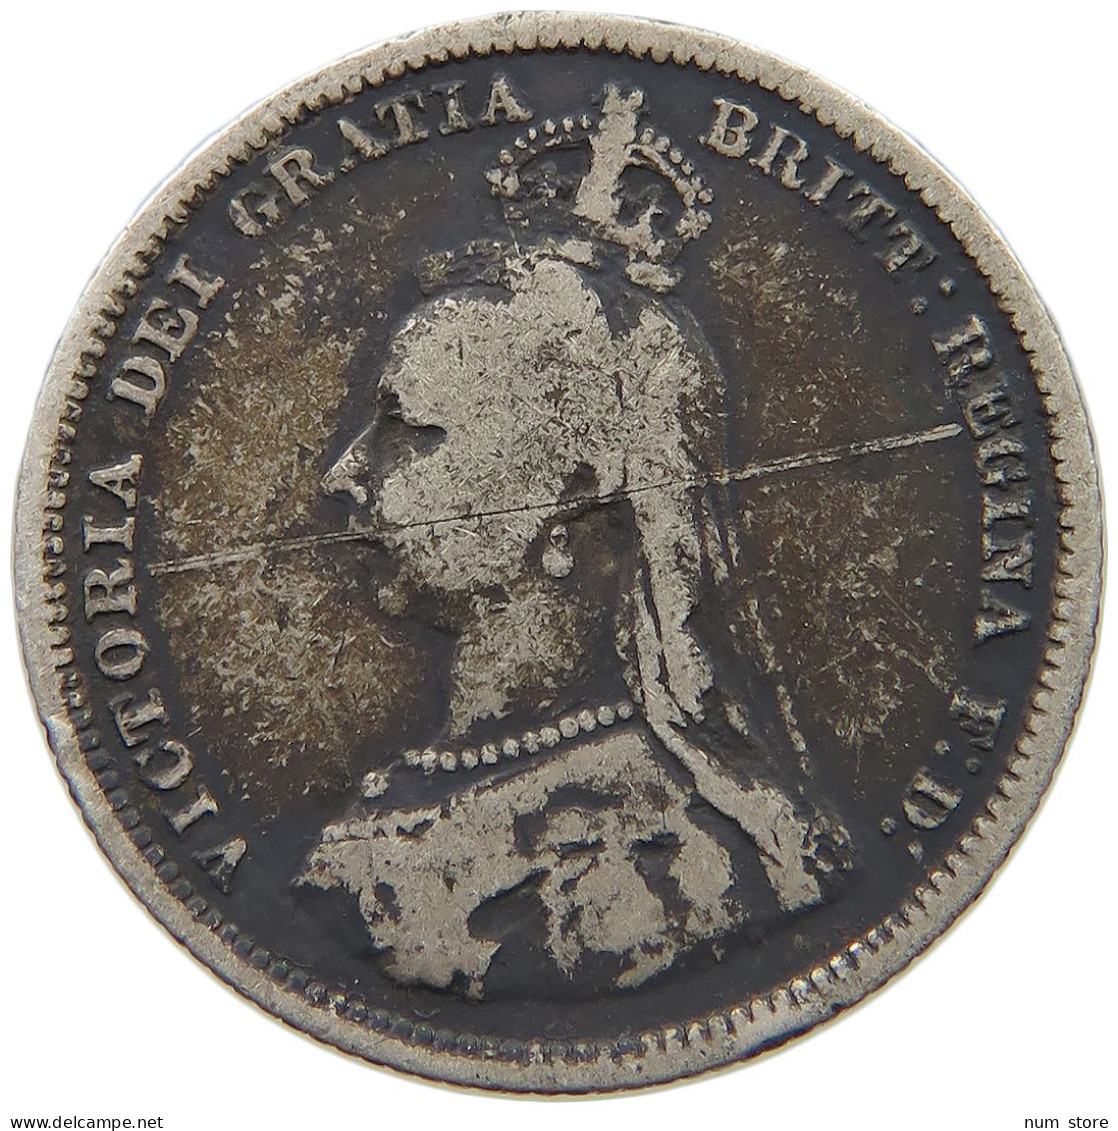 GREAT BRITAIN SHILLING 1888 VICTORIA 1837-1901 #MA 023308 - I. 1 Shilling